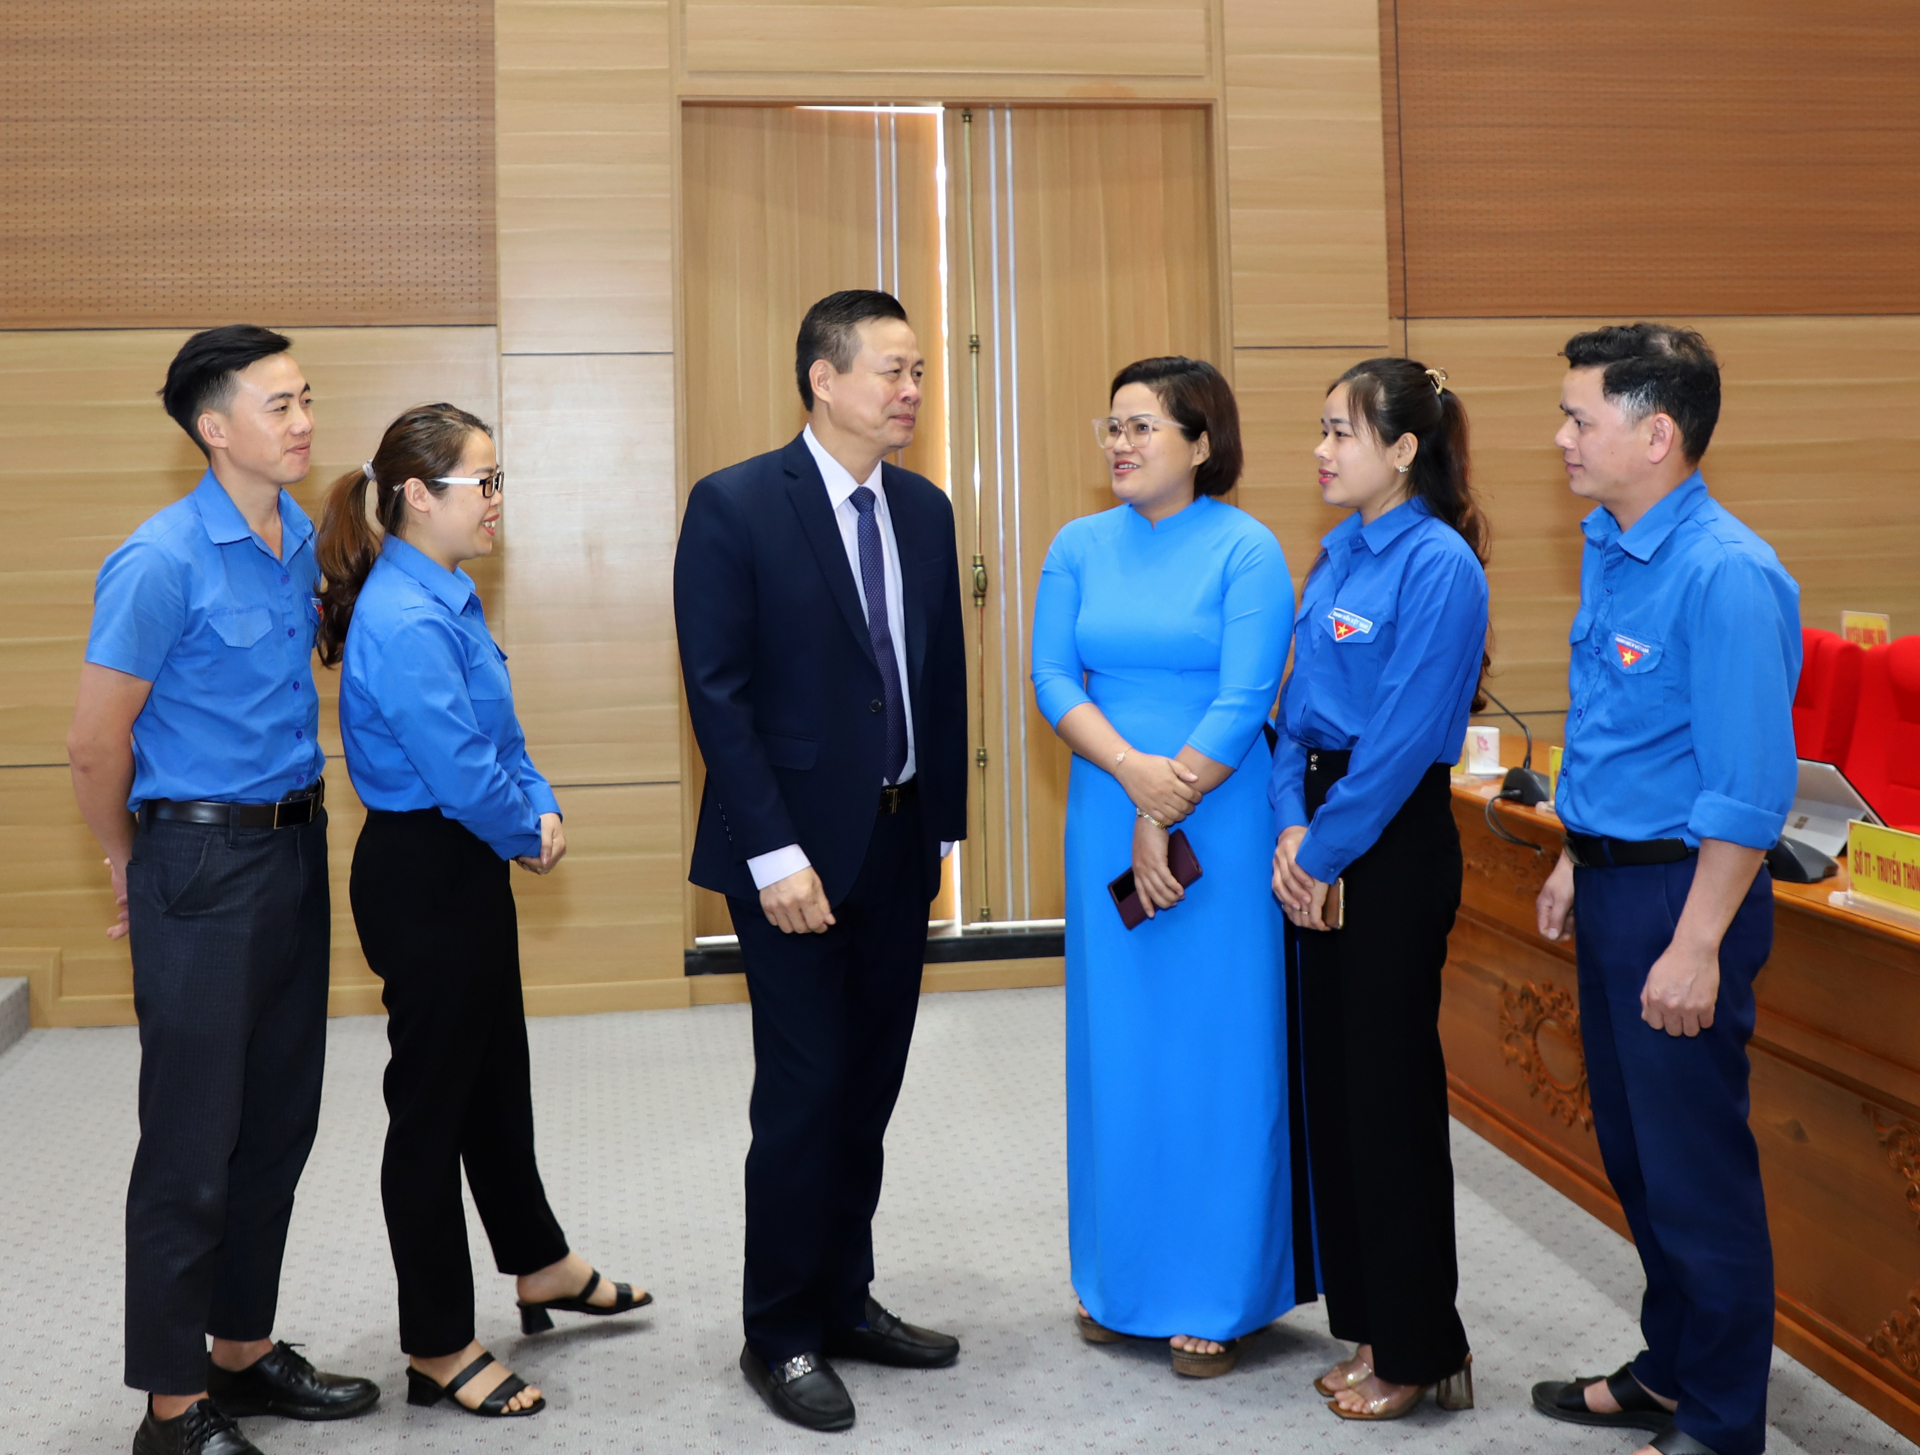 Chủ tịch UBND tỉnh Nguyễn Văn Sơn trao đổi với thanh niên bên lề buổi đối thoại.
